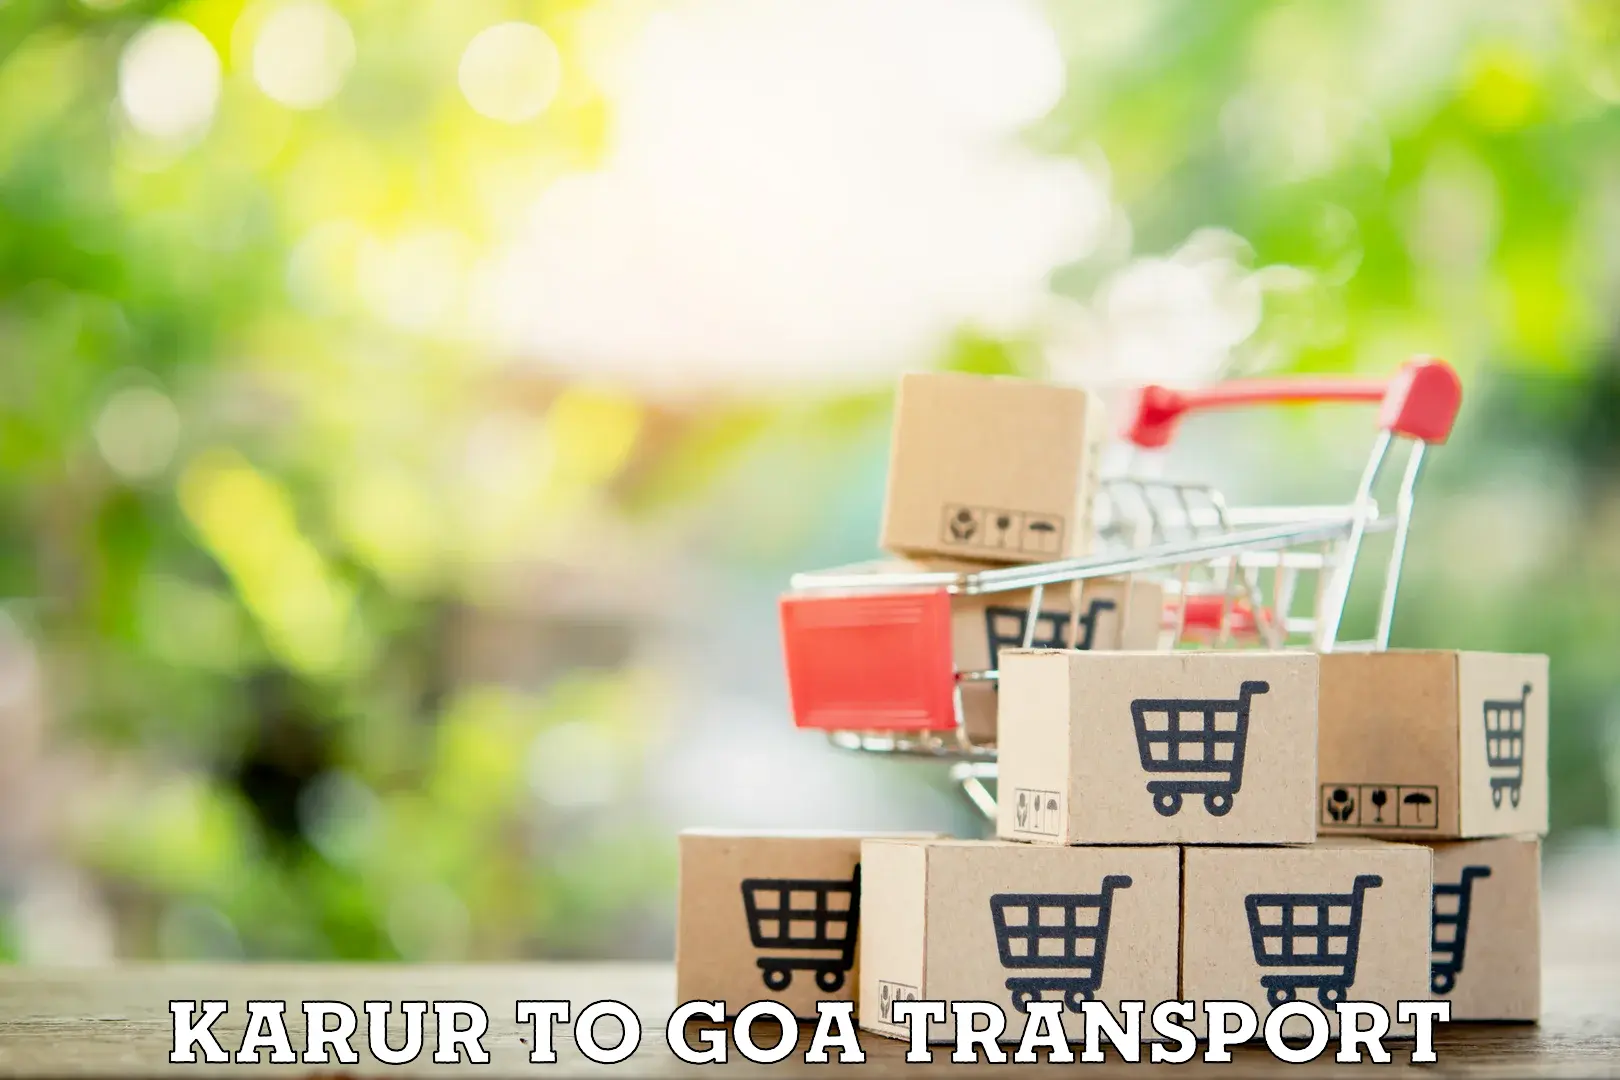 Two wheeler transport services Karur to IIT Goa